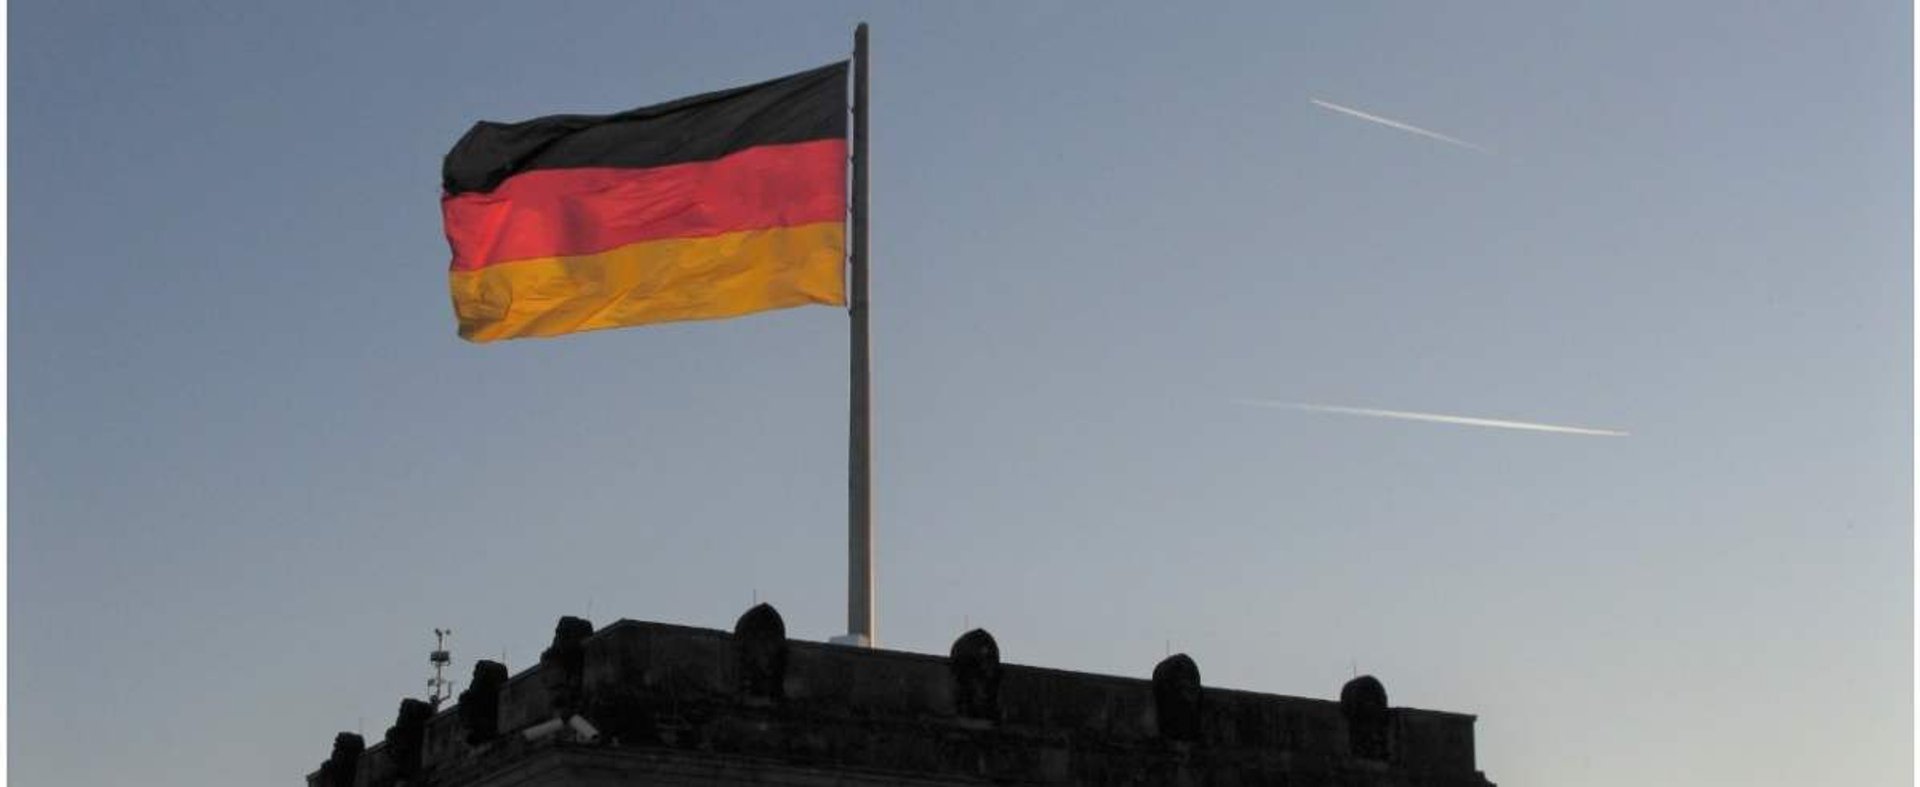 Niemcy wprowadzają ważne zmiany od 2021 r.